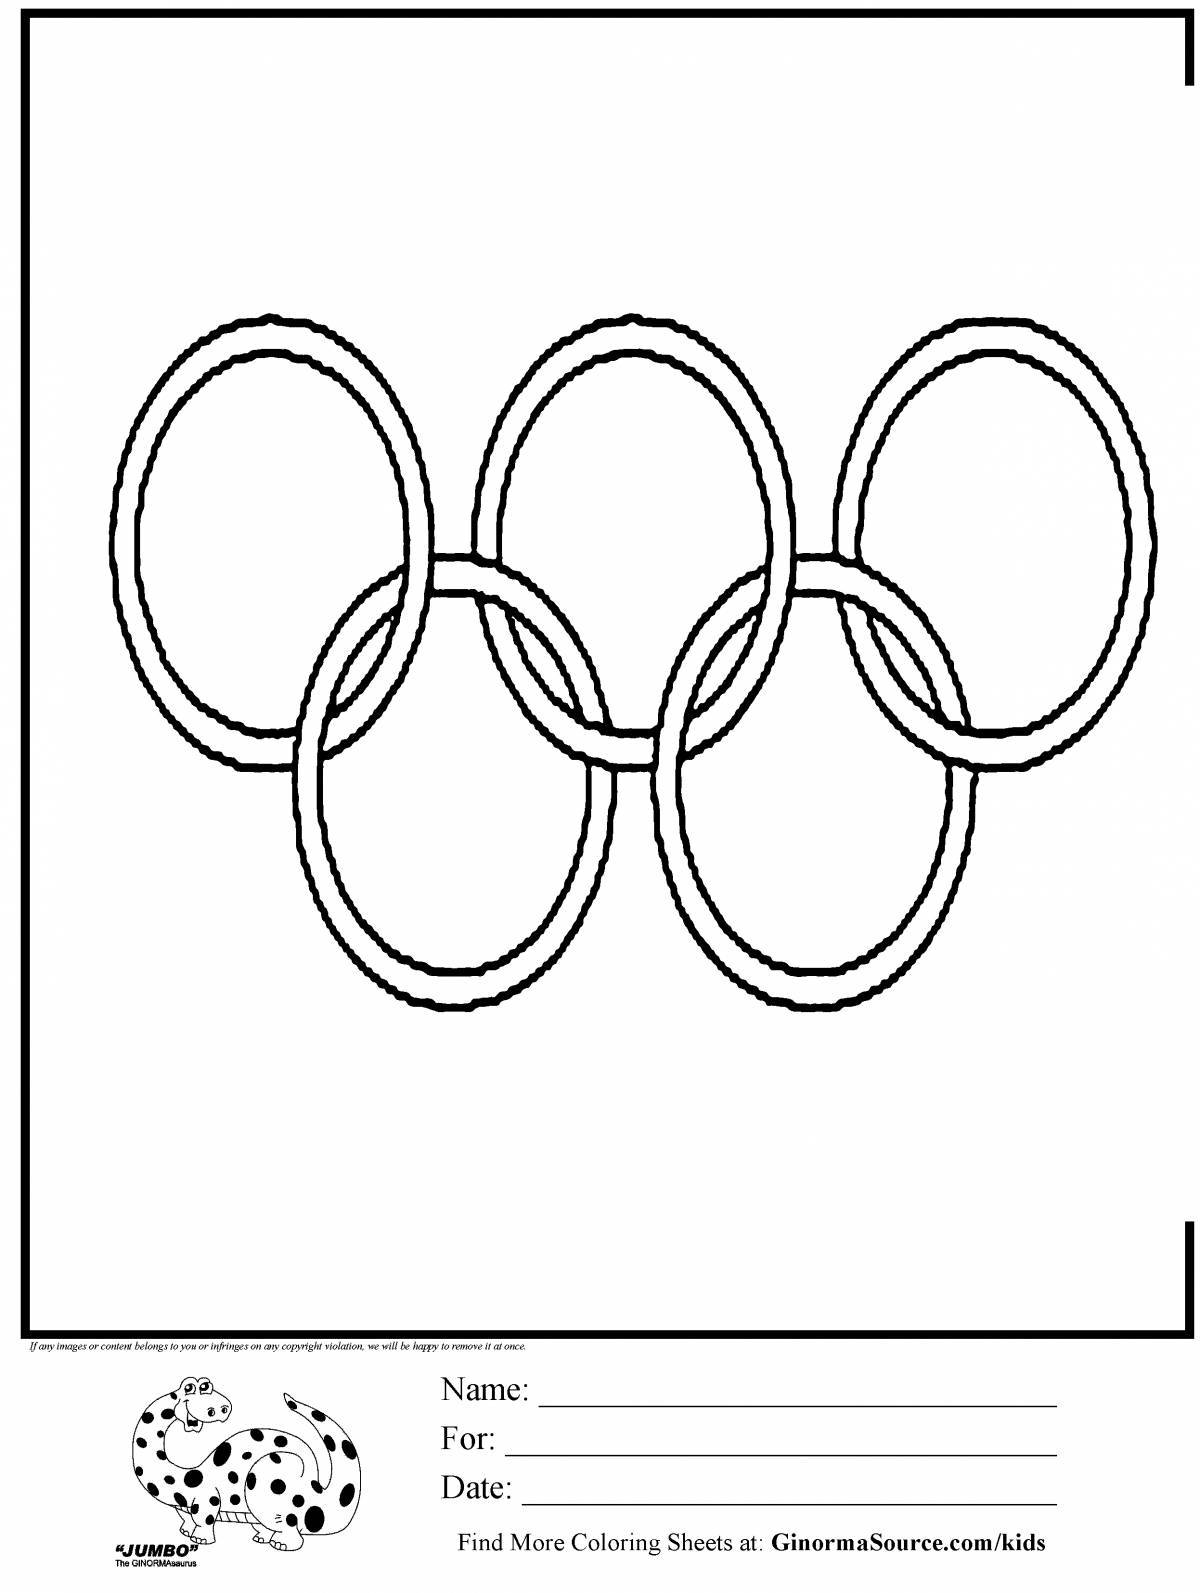 Раскраска ослепительные олимпийские кольца